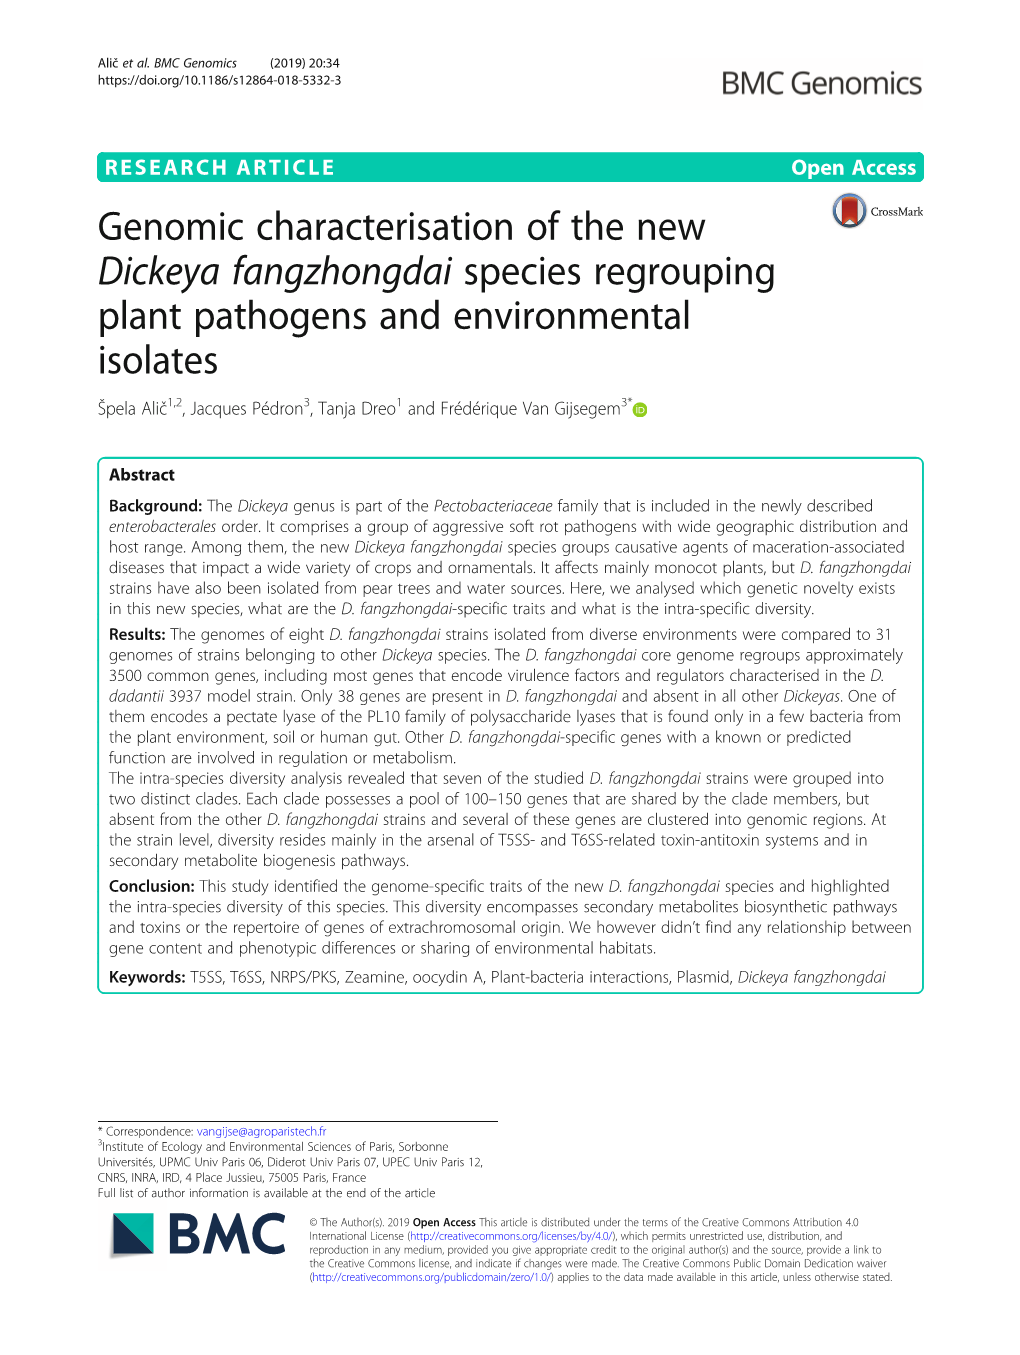 Genomic Characterisation of the New Dickeya Fangzhongdai Species